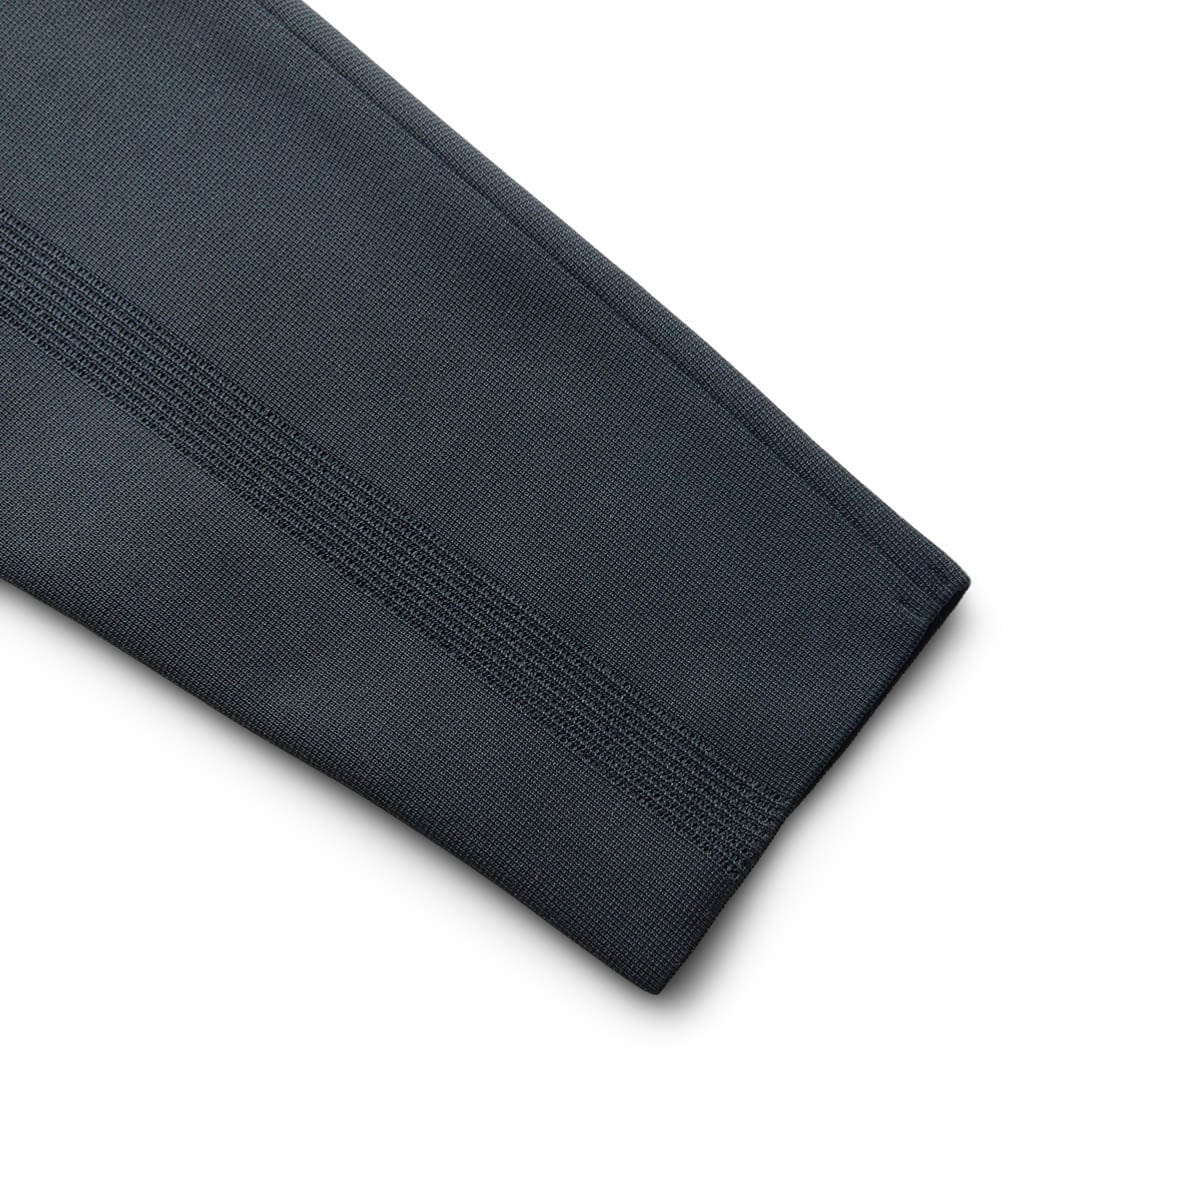 MILAN RIB TAPERED PANTS BLACK | Bodega